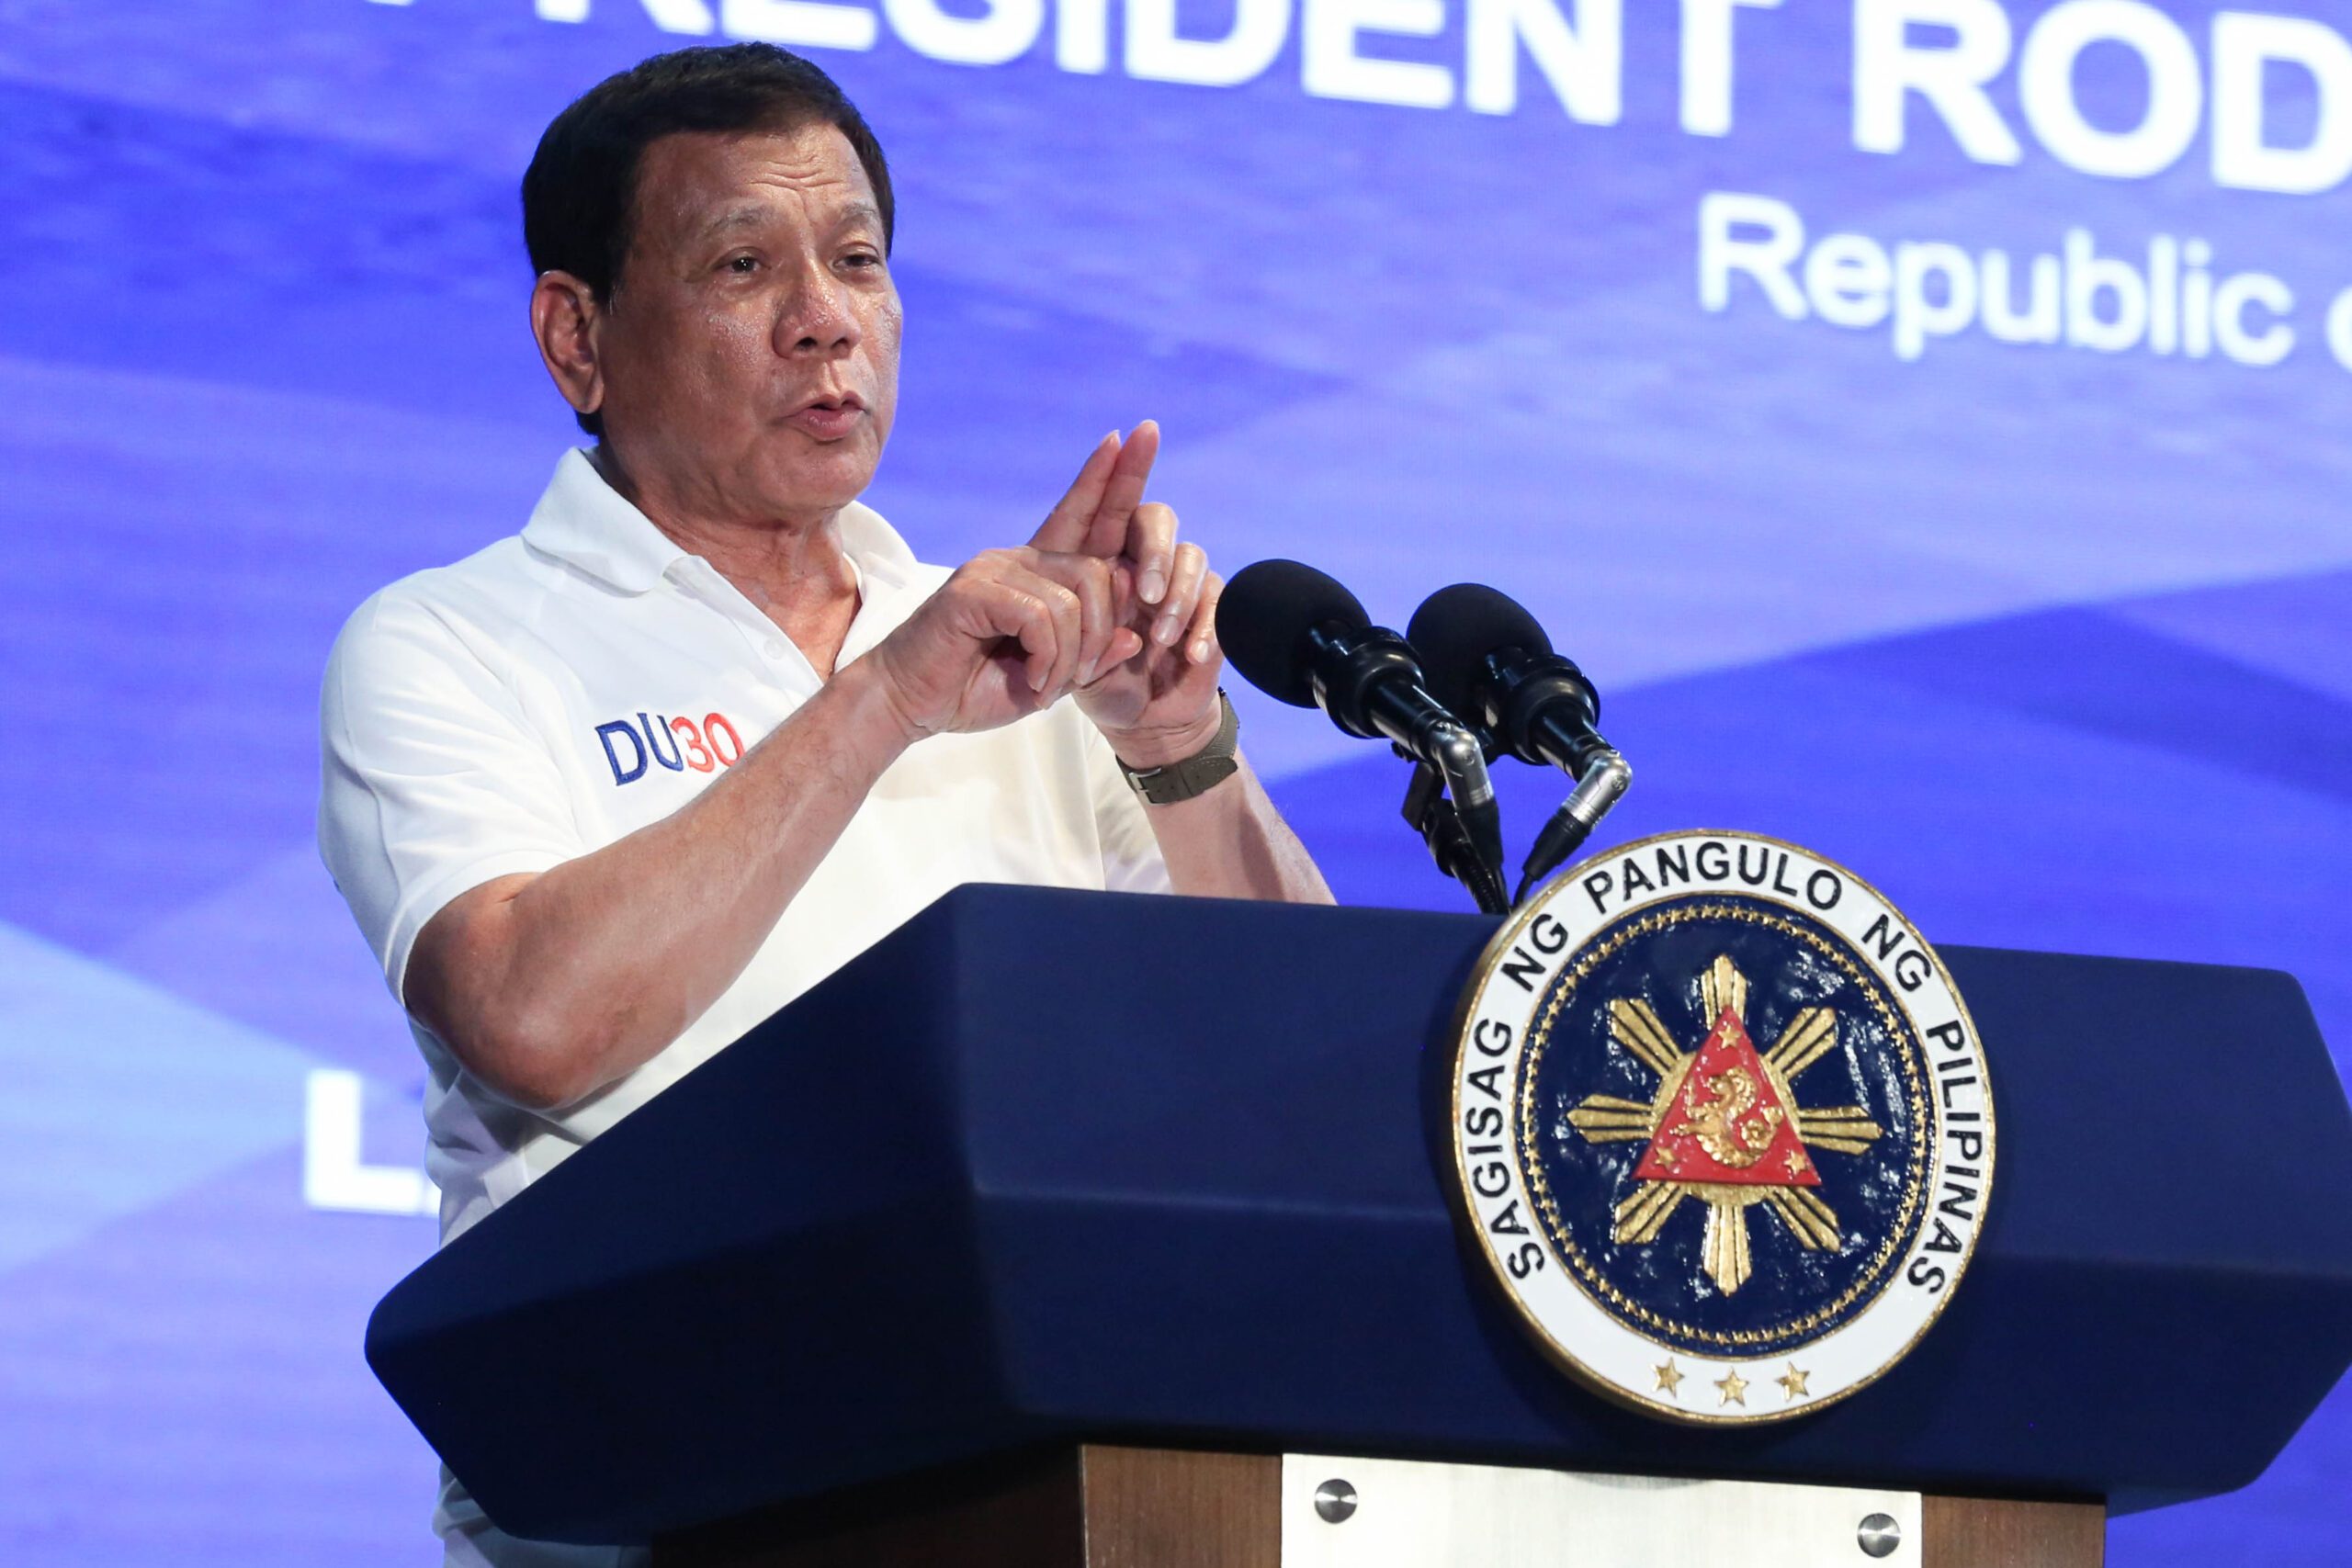 New York Times slams White House invitation for ‘despot’ Duterte